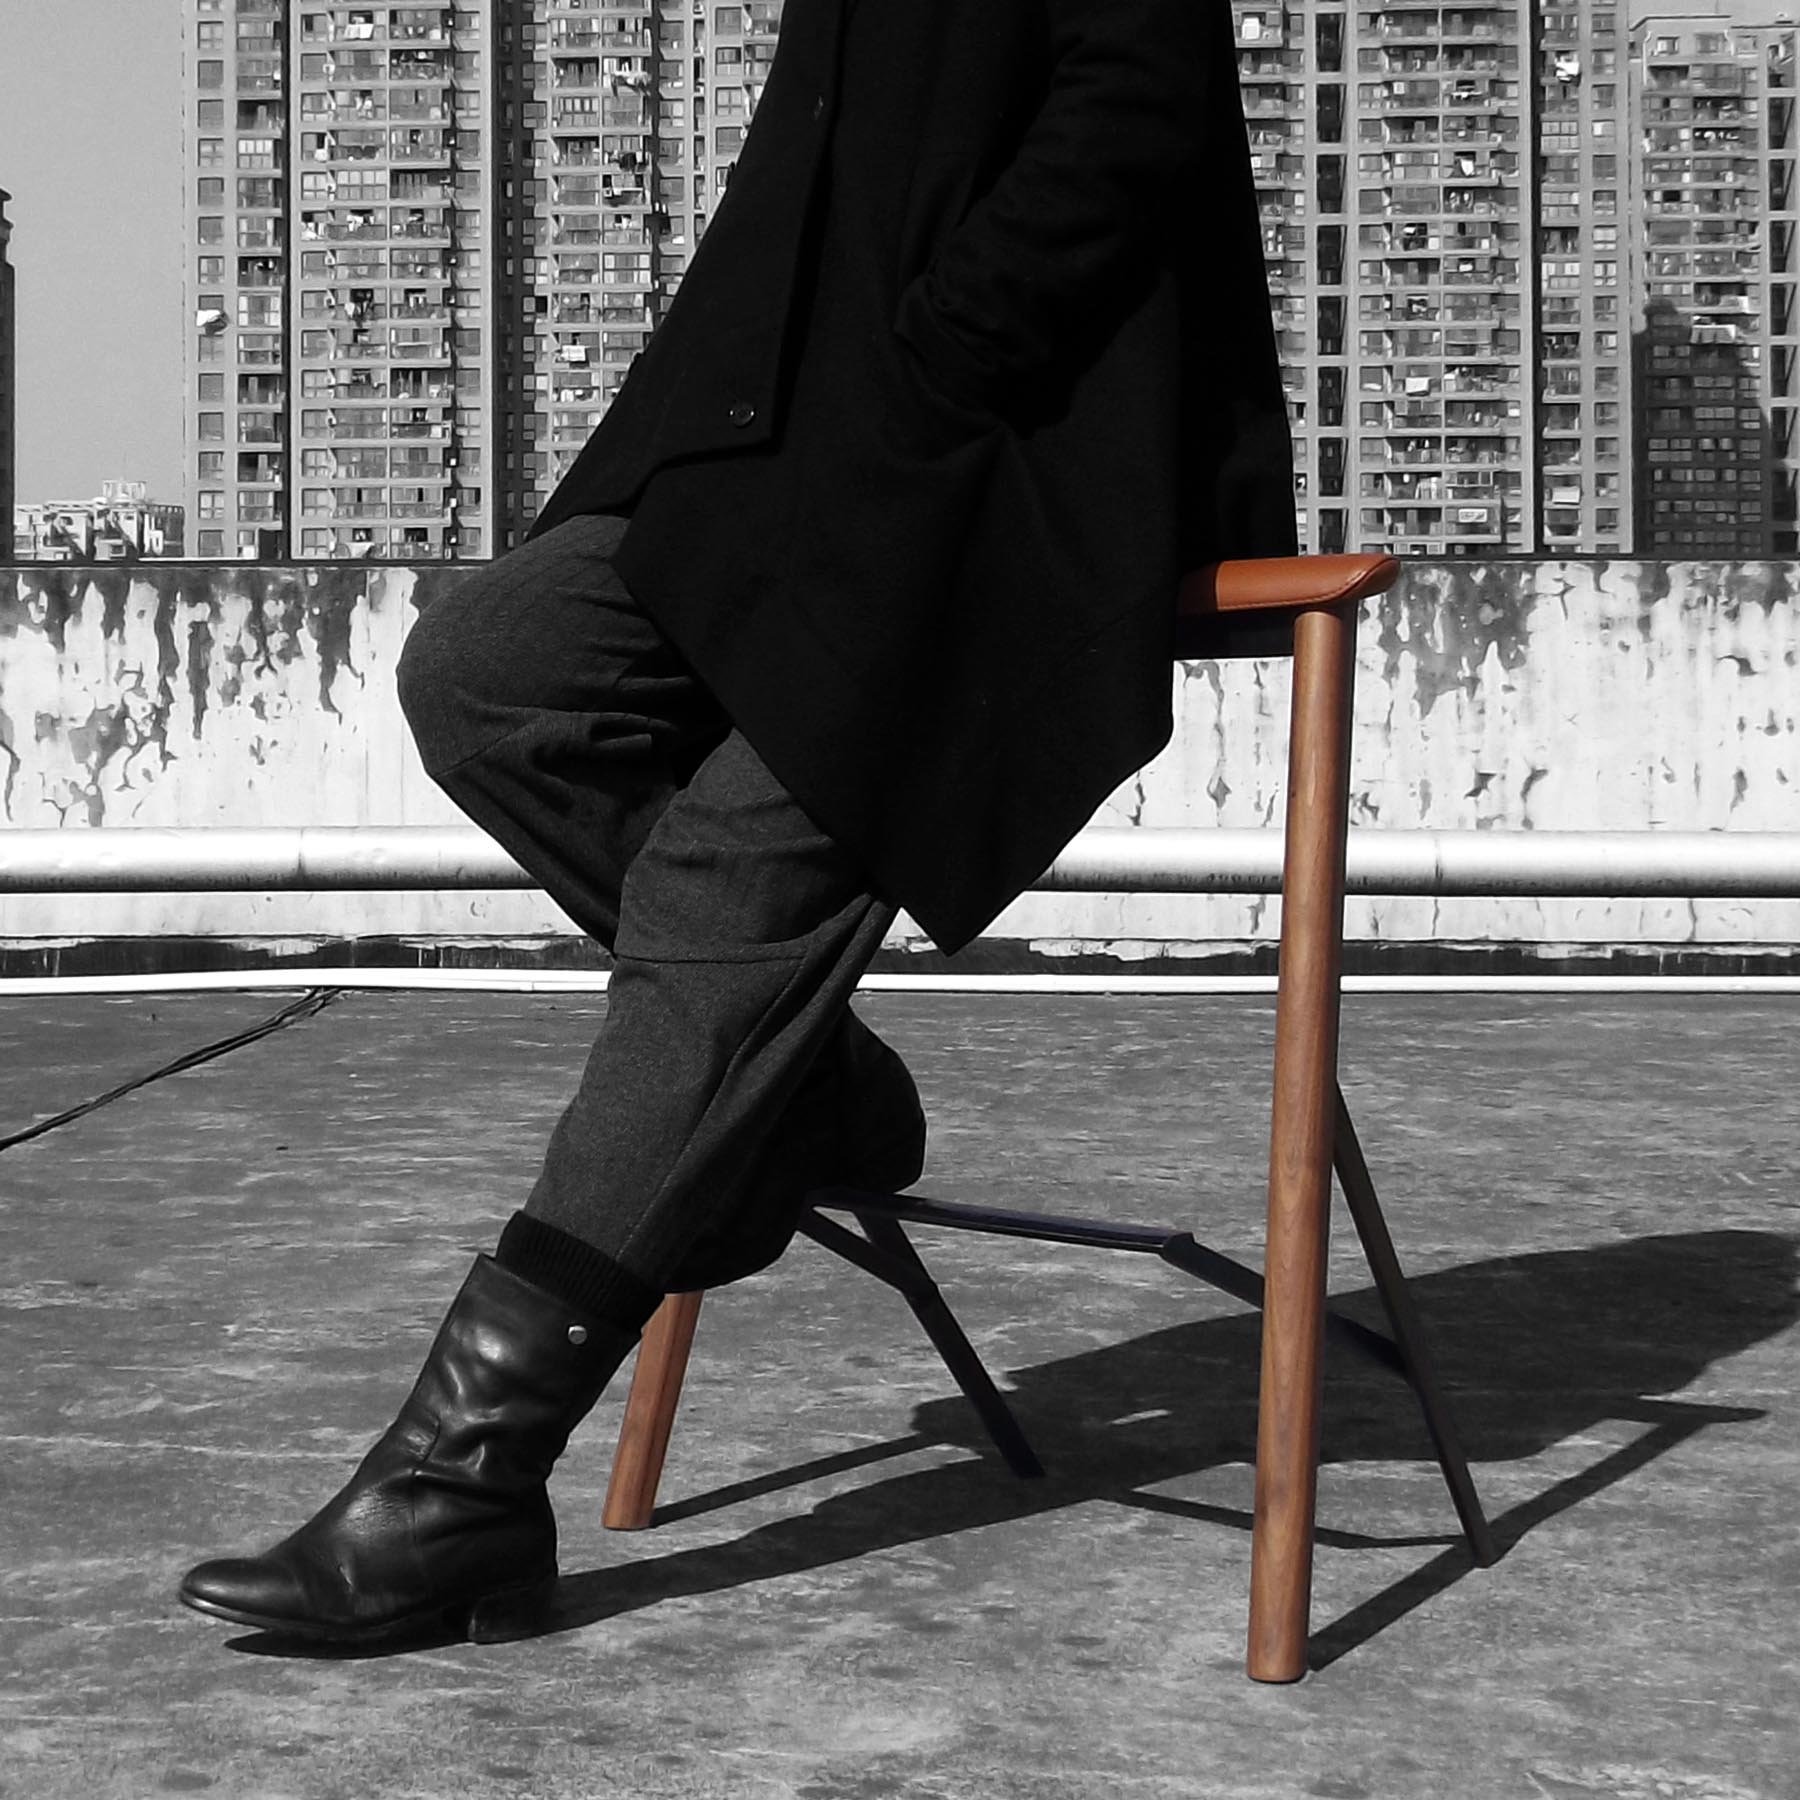 Balustrade Chair by Zhejiang Sci-Tech University